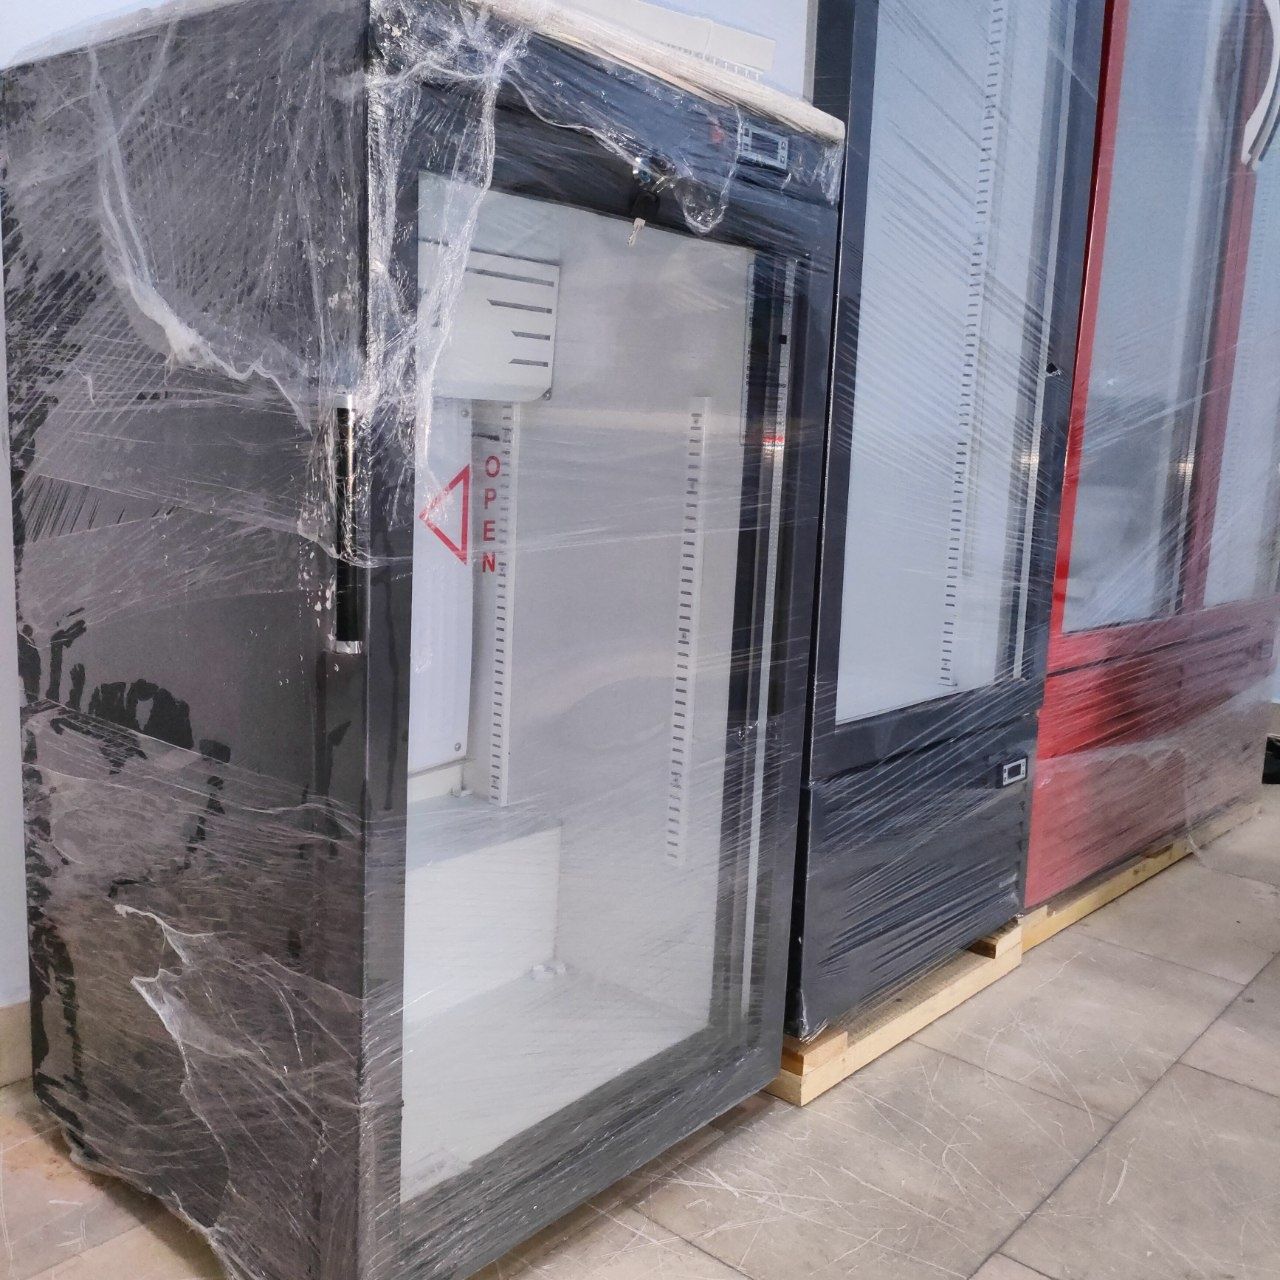 Новые витринные холодильники DEVI  HS 571. Под офисный.